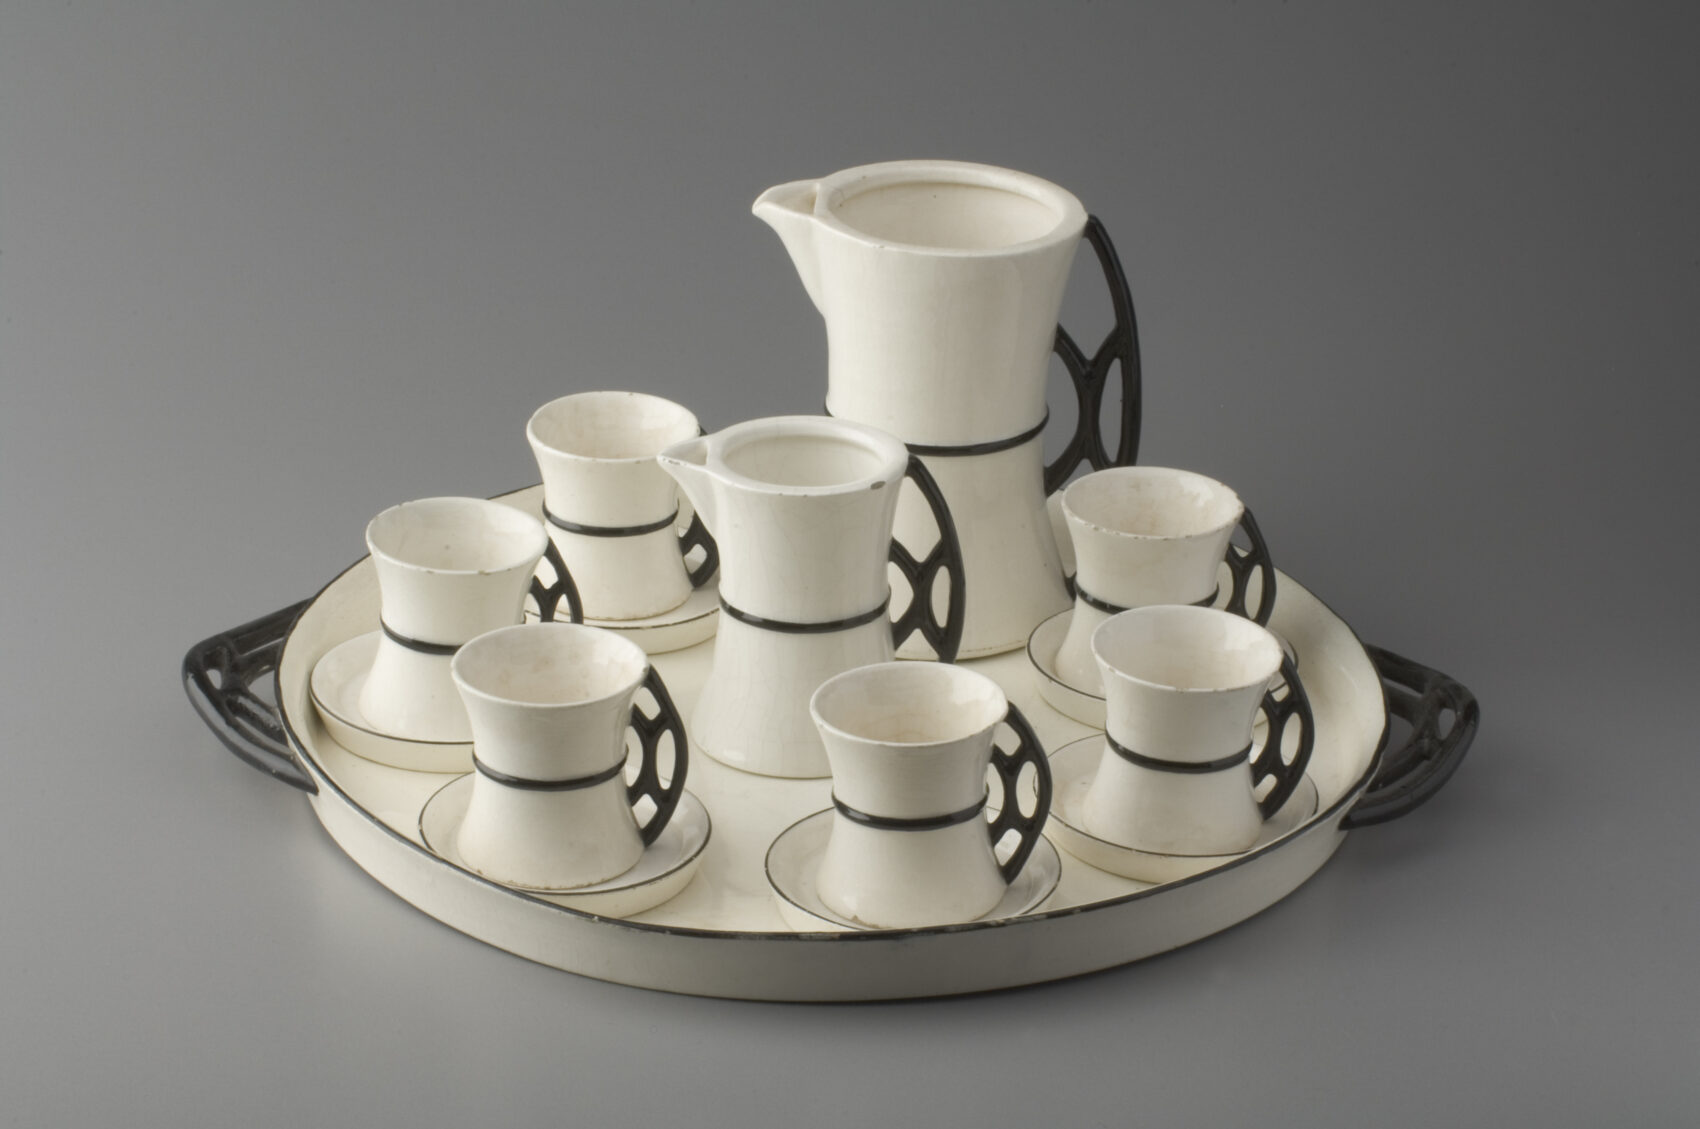 Kávová souprava na tácu , šálky, konvice, mléčenka z bílé keramiky s úzkým černým proužkěm